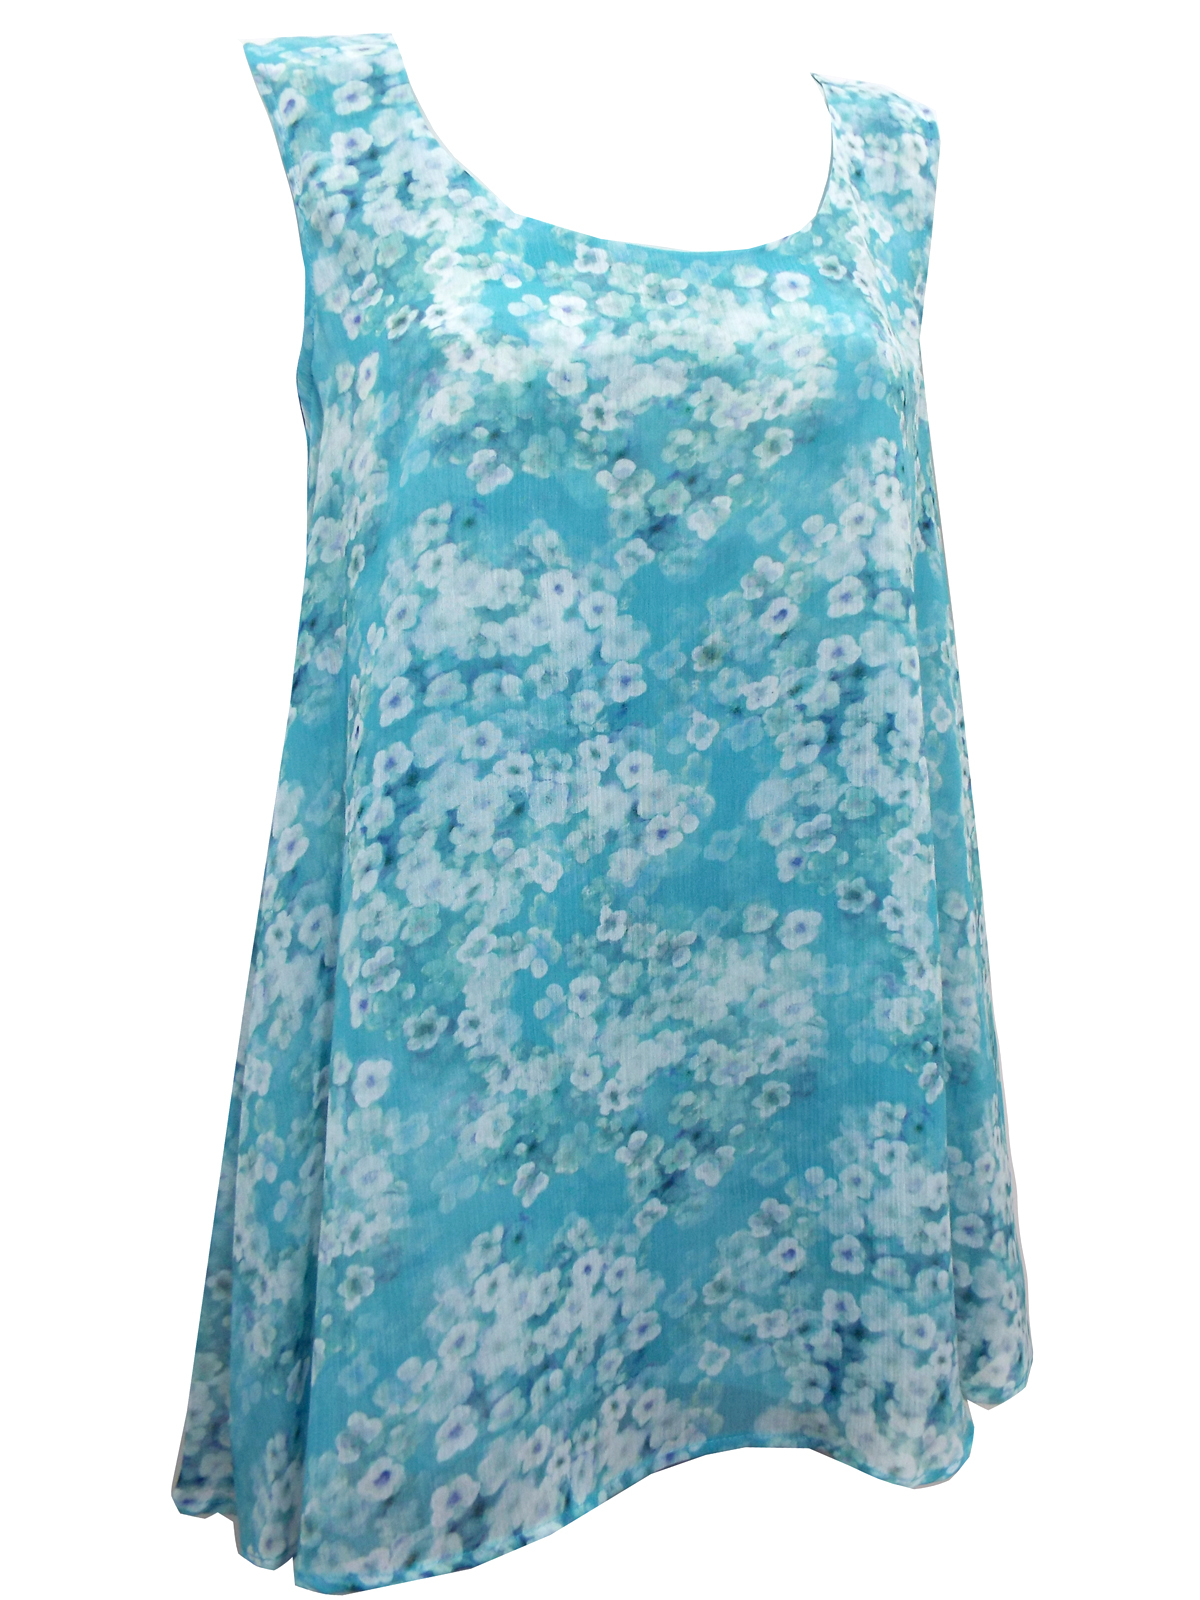 Wholesale kaliko clothing - - KAL1KO Light Turquoise Pucnchy Marina ...